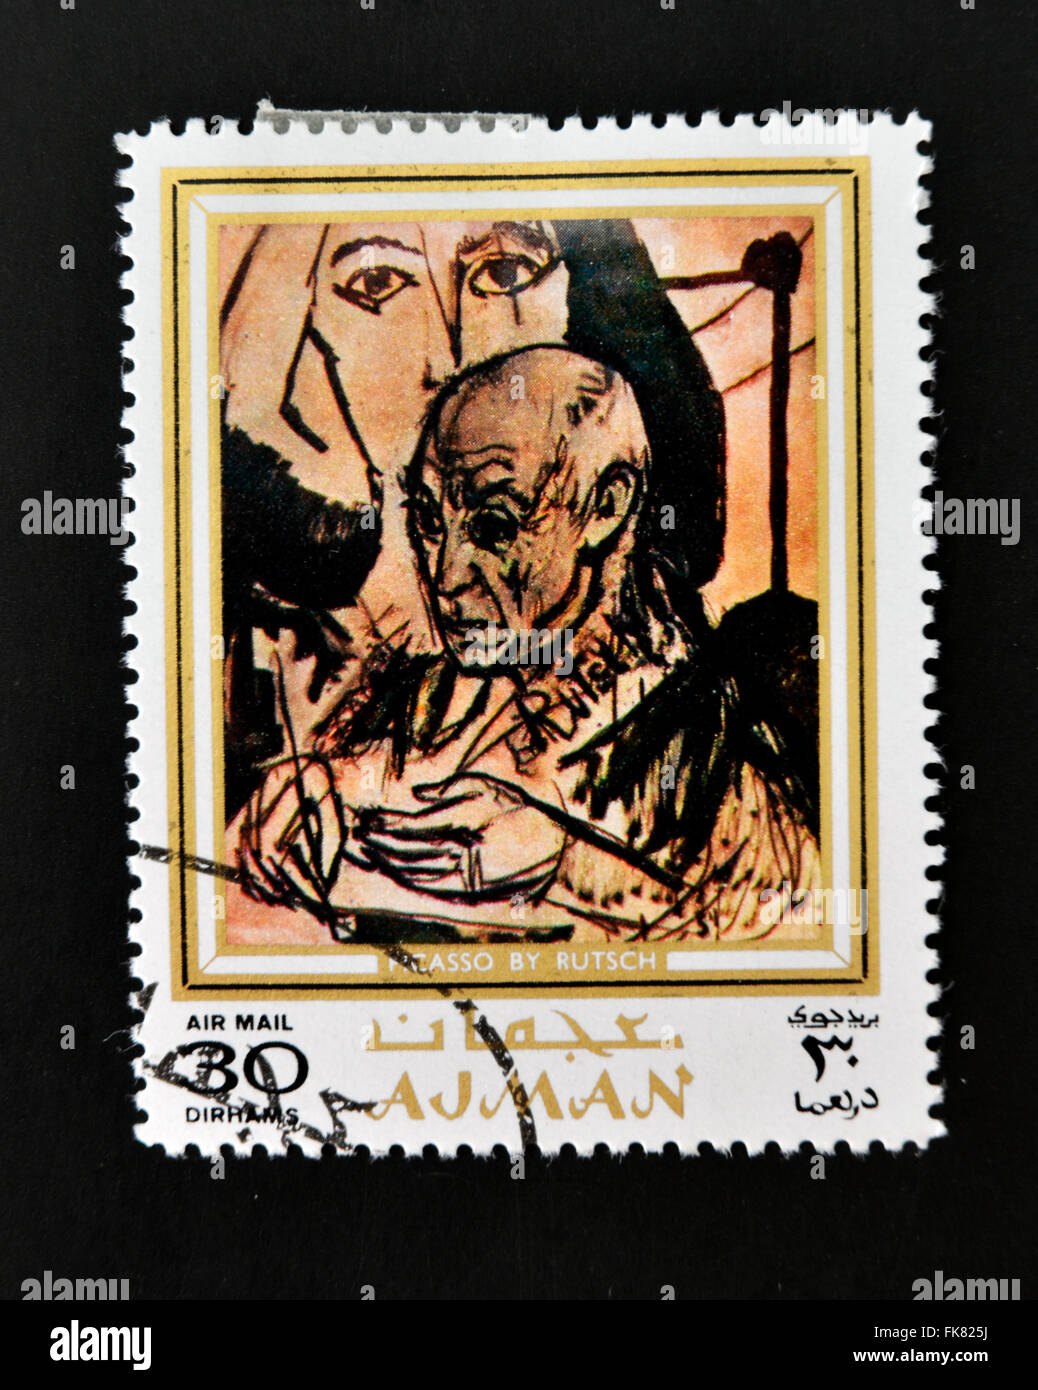 AJMAN - vers 1970 un timbre imprimé en Ajman montre Picasso portrait par Alexander Rutsch, vers 1970 Banque D'Images